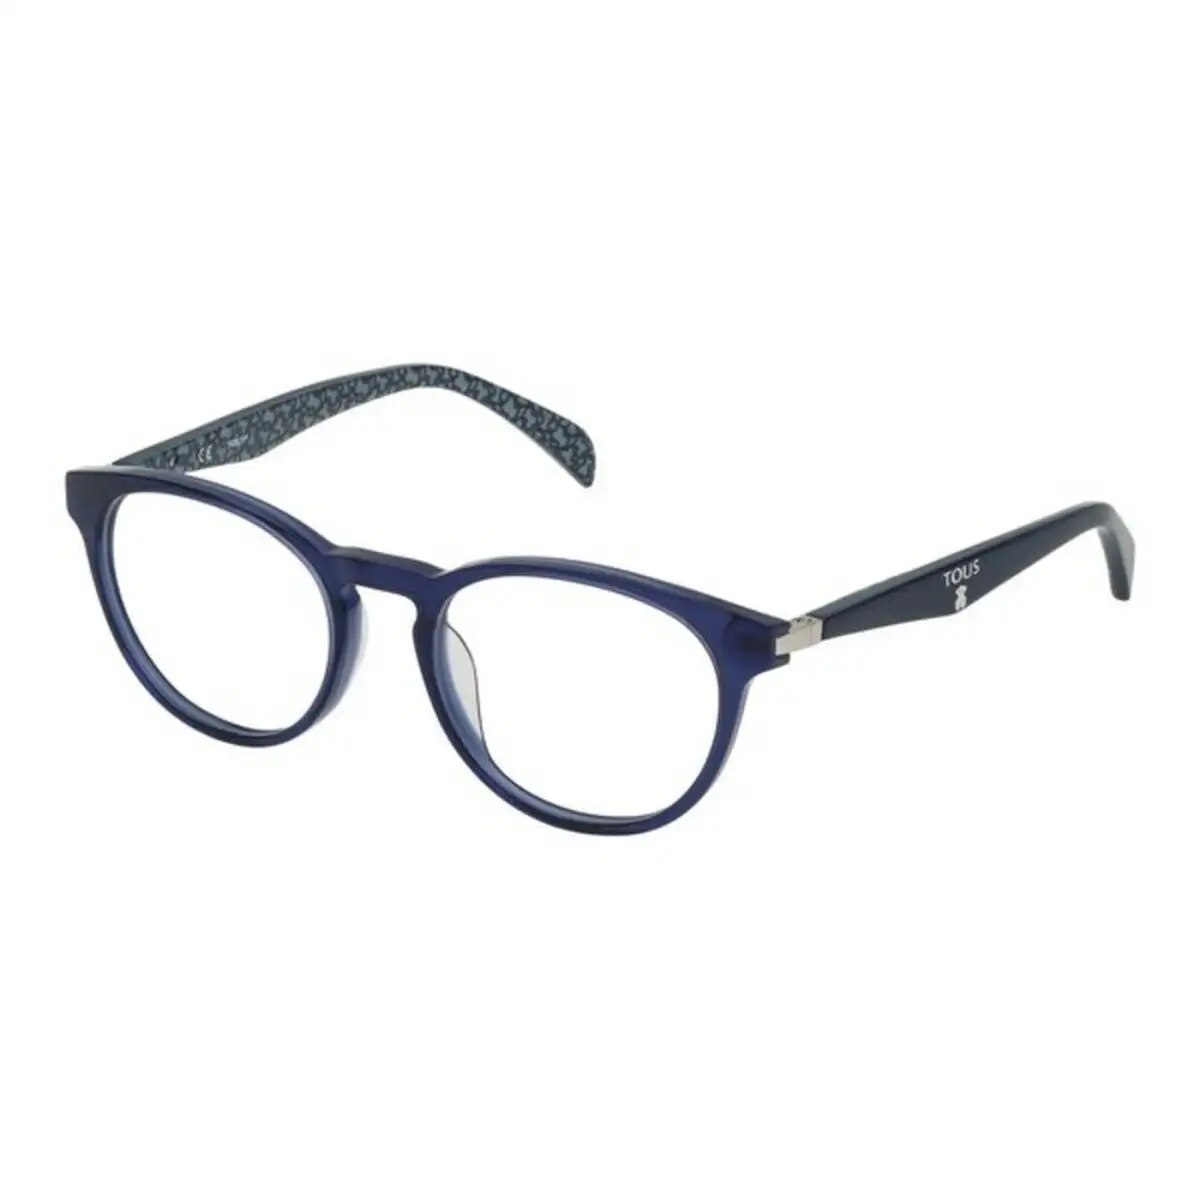 Monture de lunettes femme tous vto992500t31 50 mm bleu o 50 mm _7829. Bienvenue chez DIAYTAR SENEGAL - Où Chaque Détail Fait la Différence. Découvrez notre sélection méticuleuse et choisissez des articles qui répondent à vos exigences.